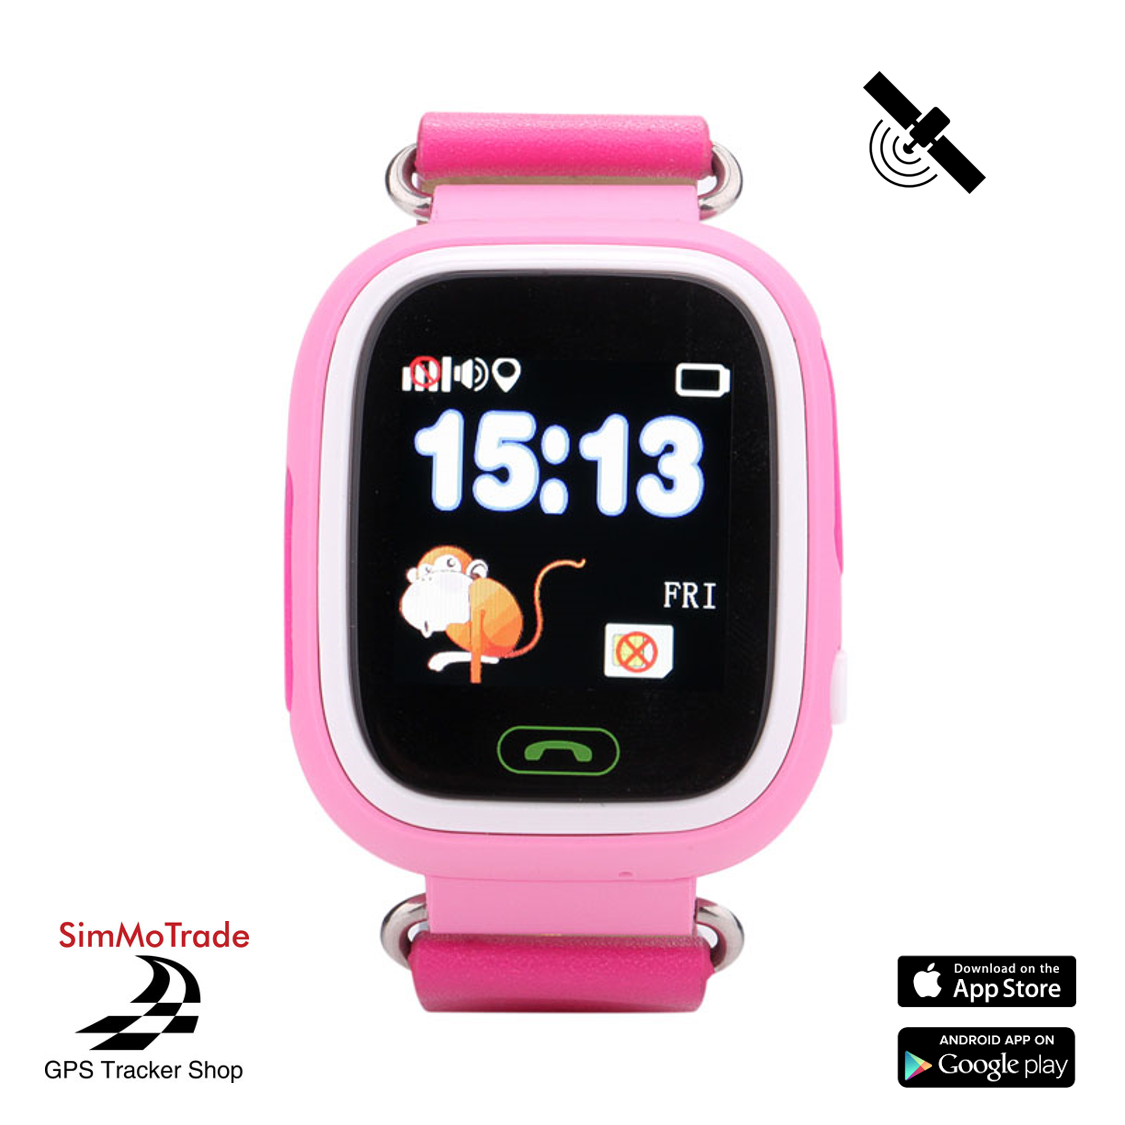 Simmotrade® GPS Tracker Uhr für Kinder, Telefonieren, SOS, Ortung, Wecker,....